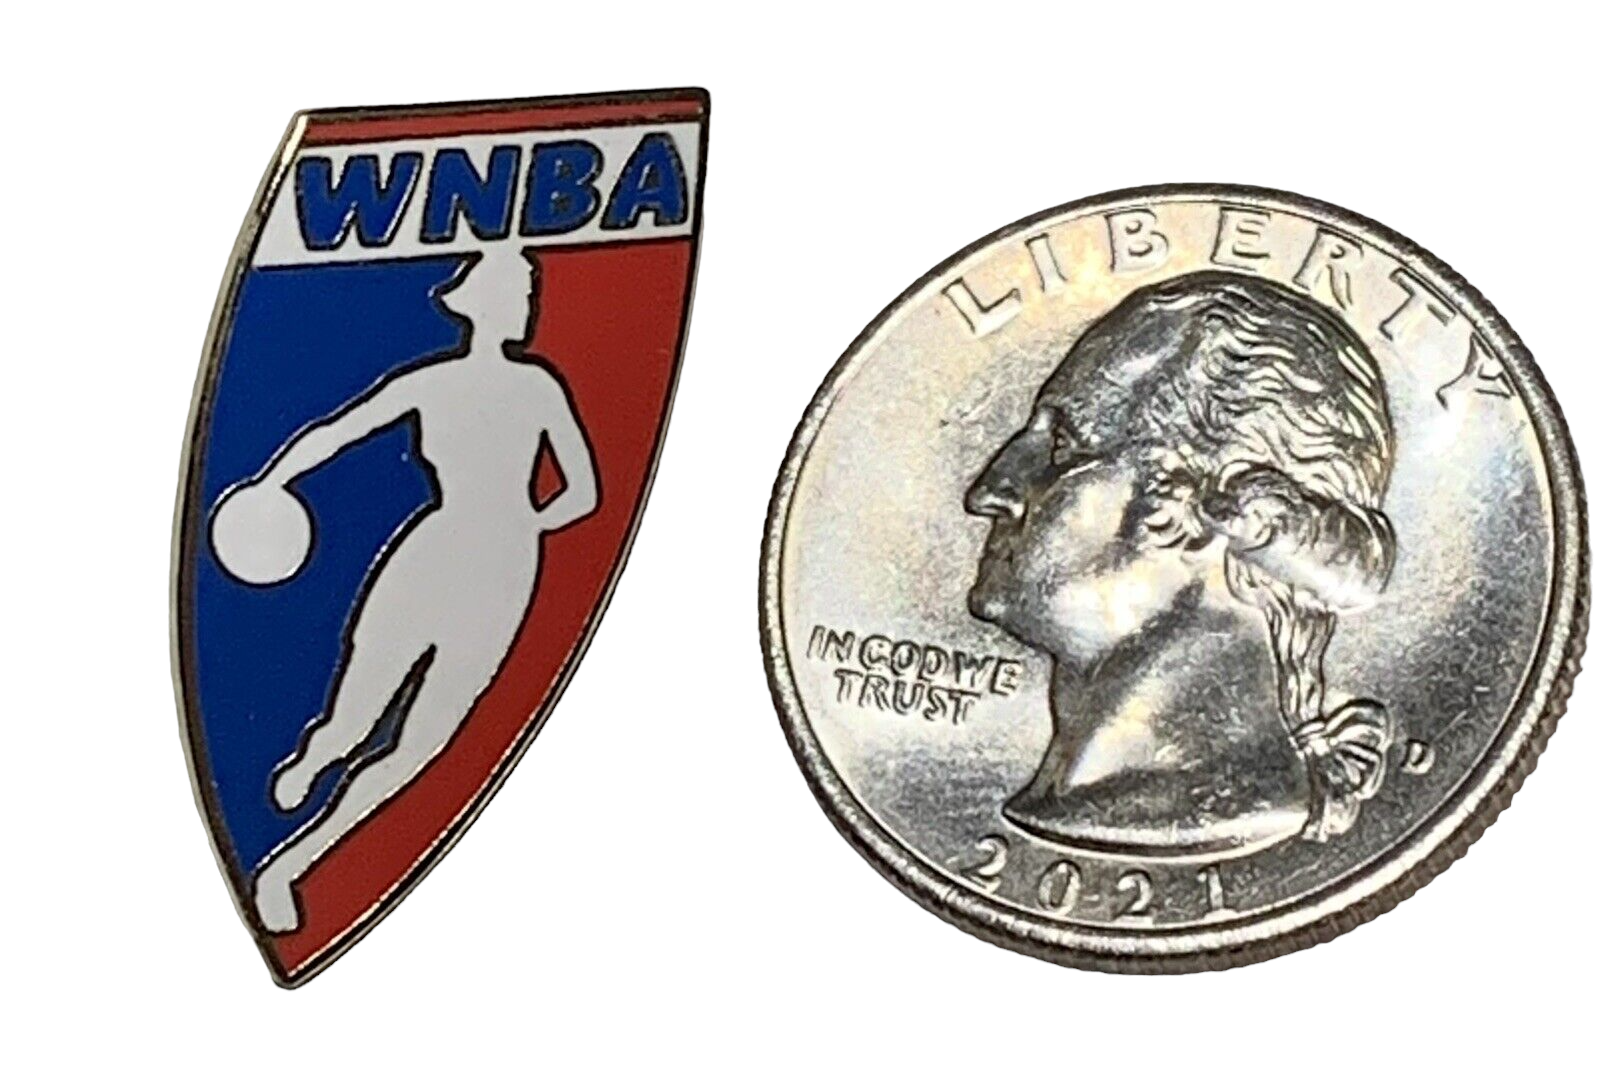 Pin on WNBA